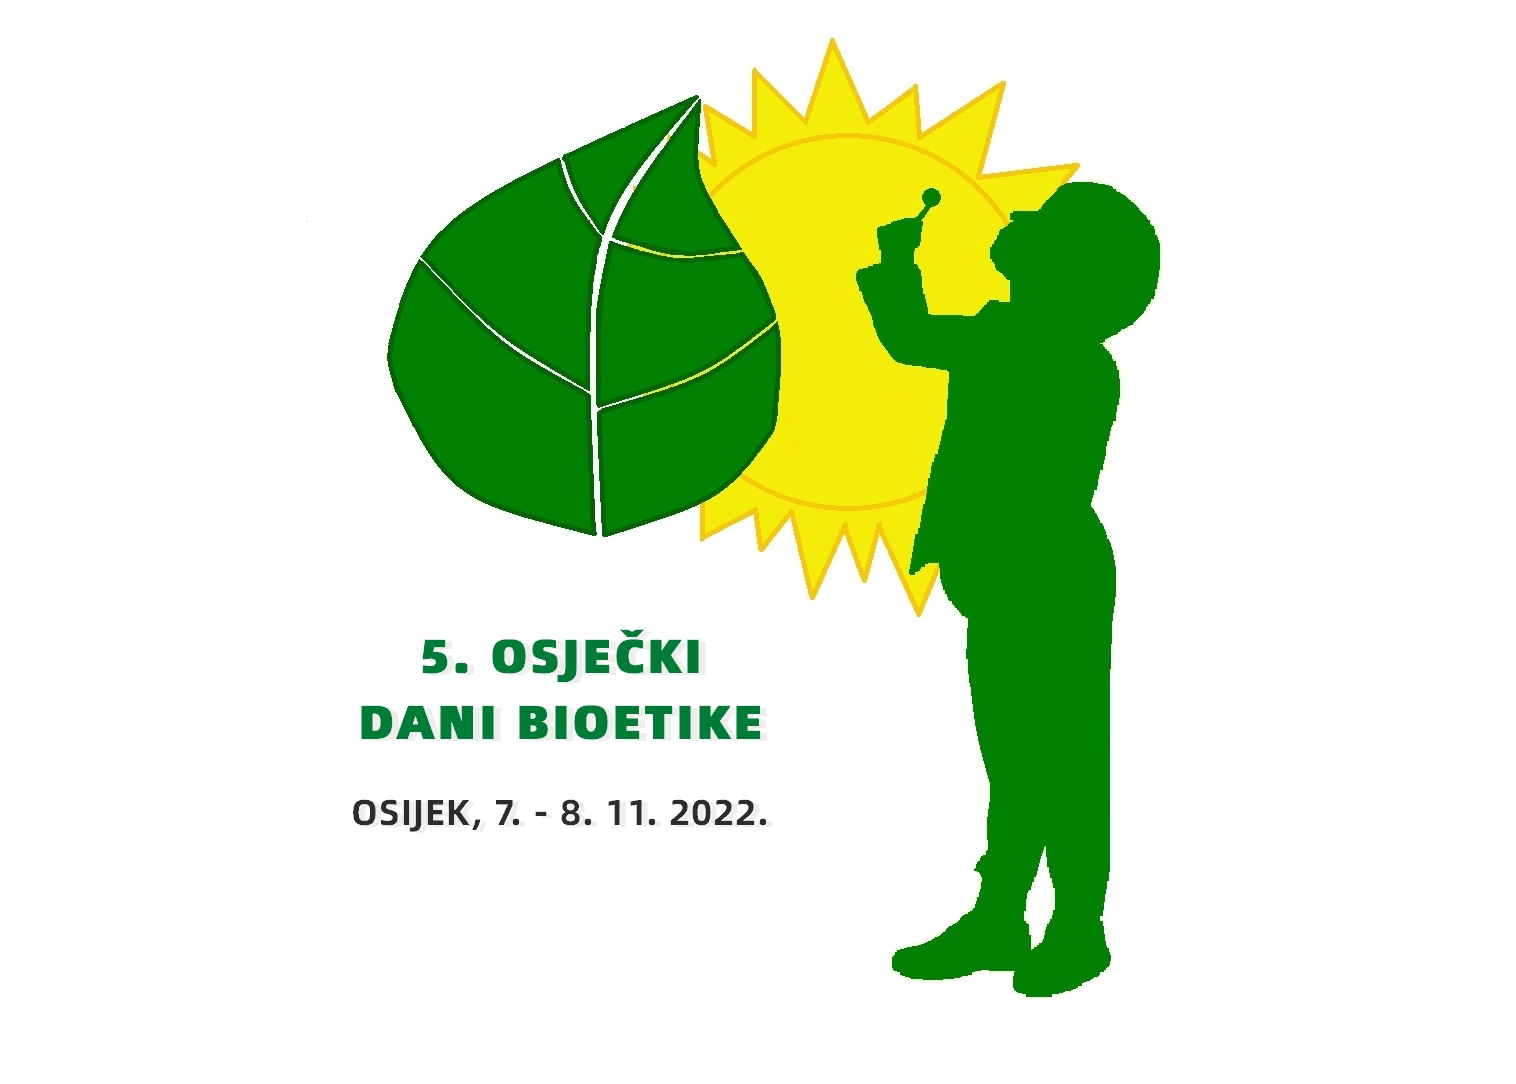 5. OSJEČKI DANI BIOETIKE Osijek, Hrvatska, 7. - 8. 11. 2022.